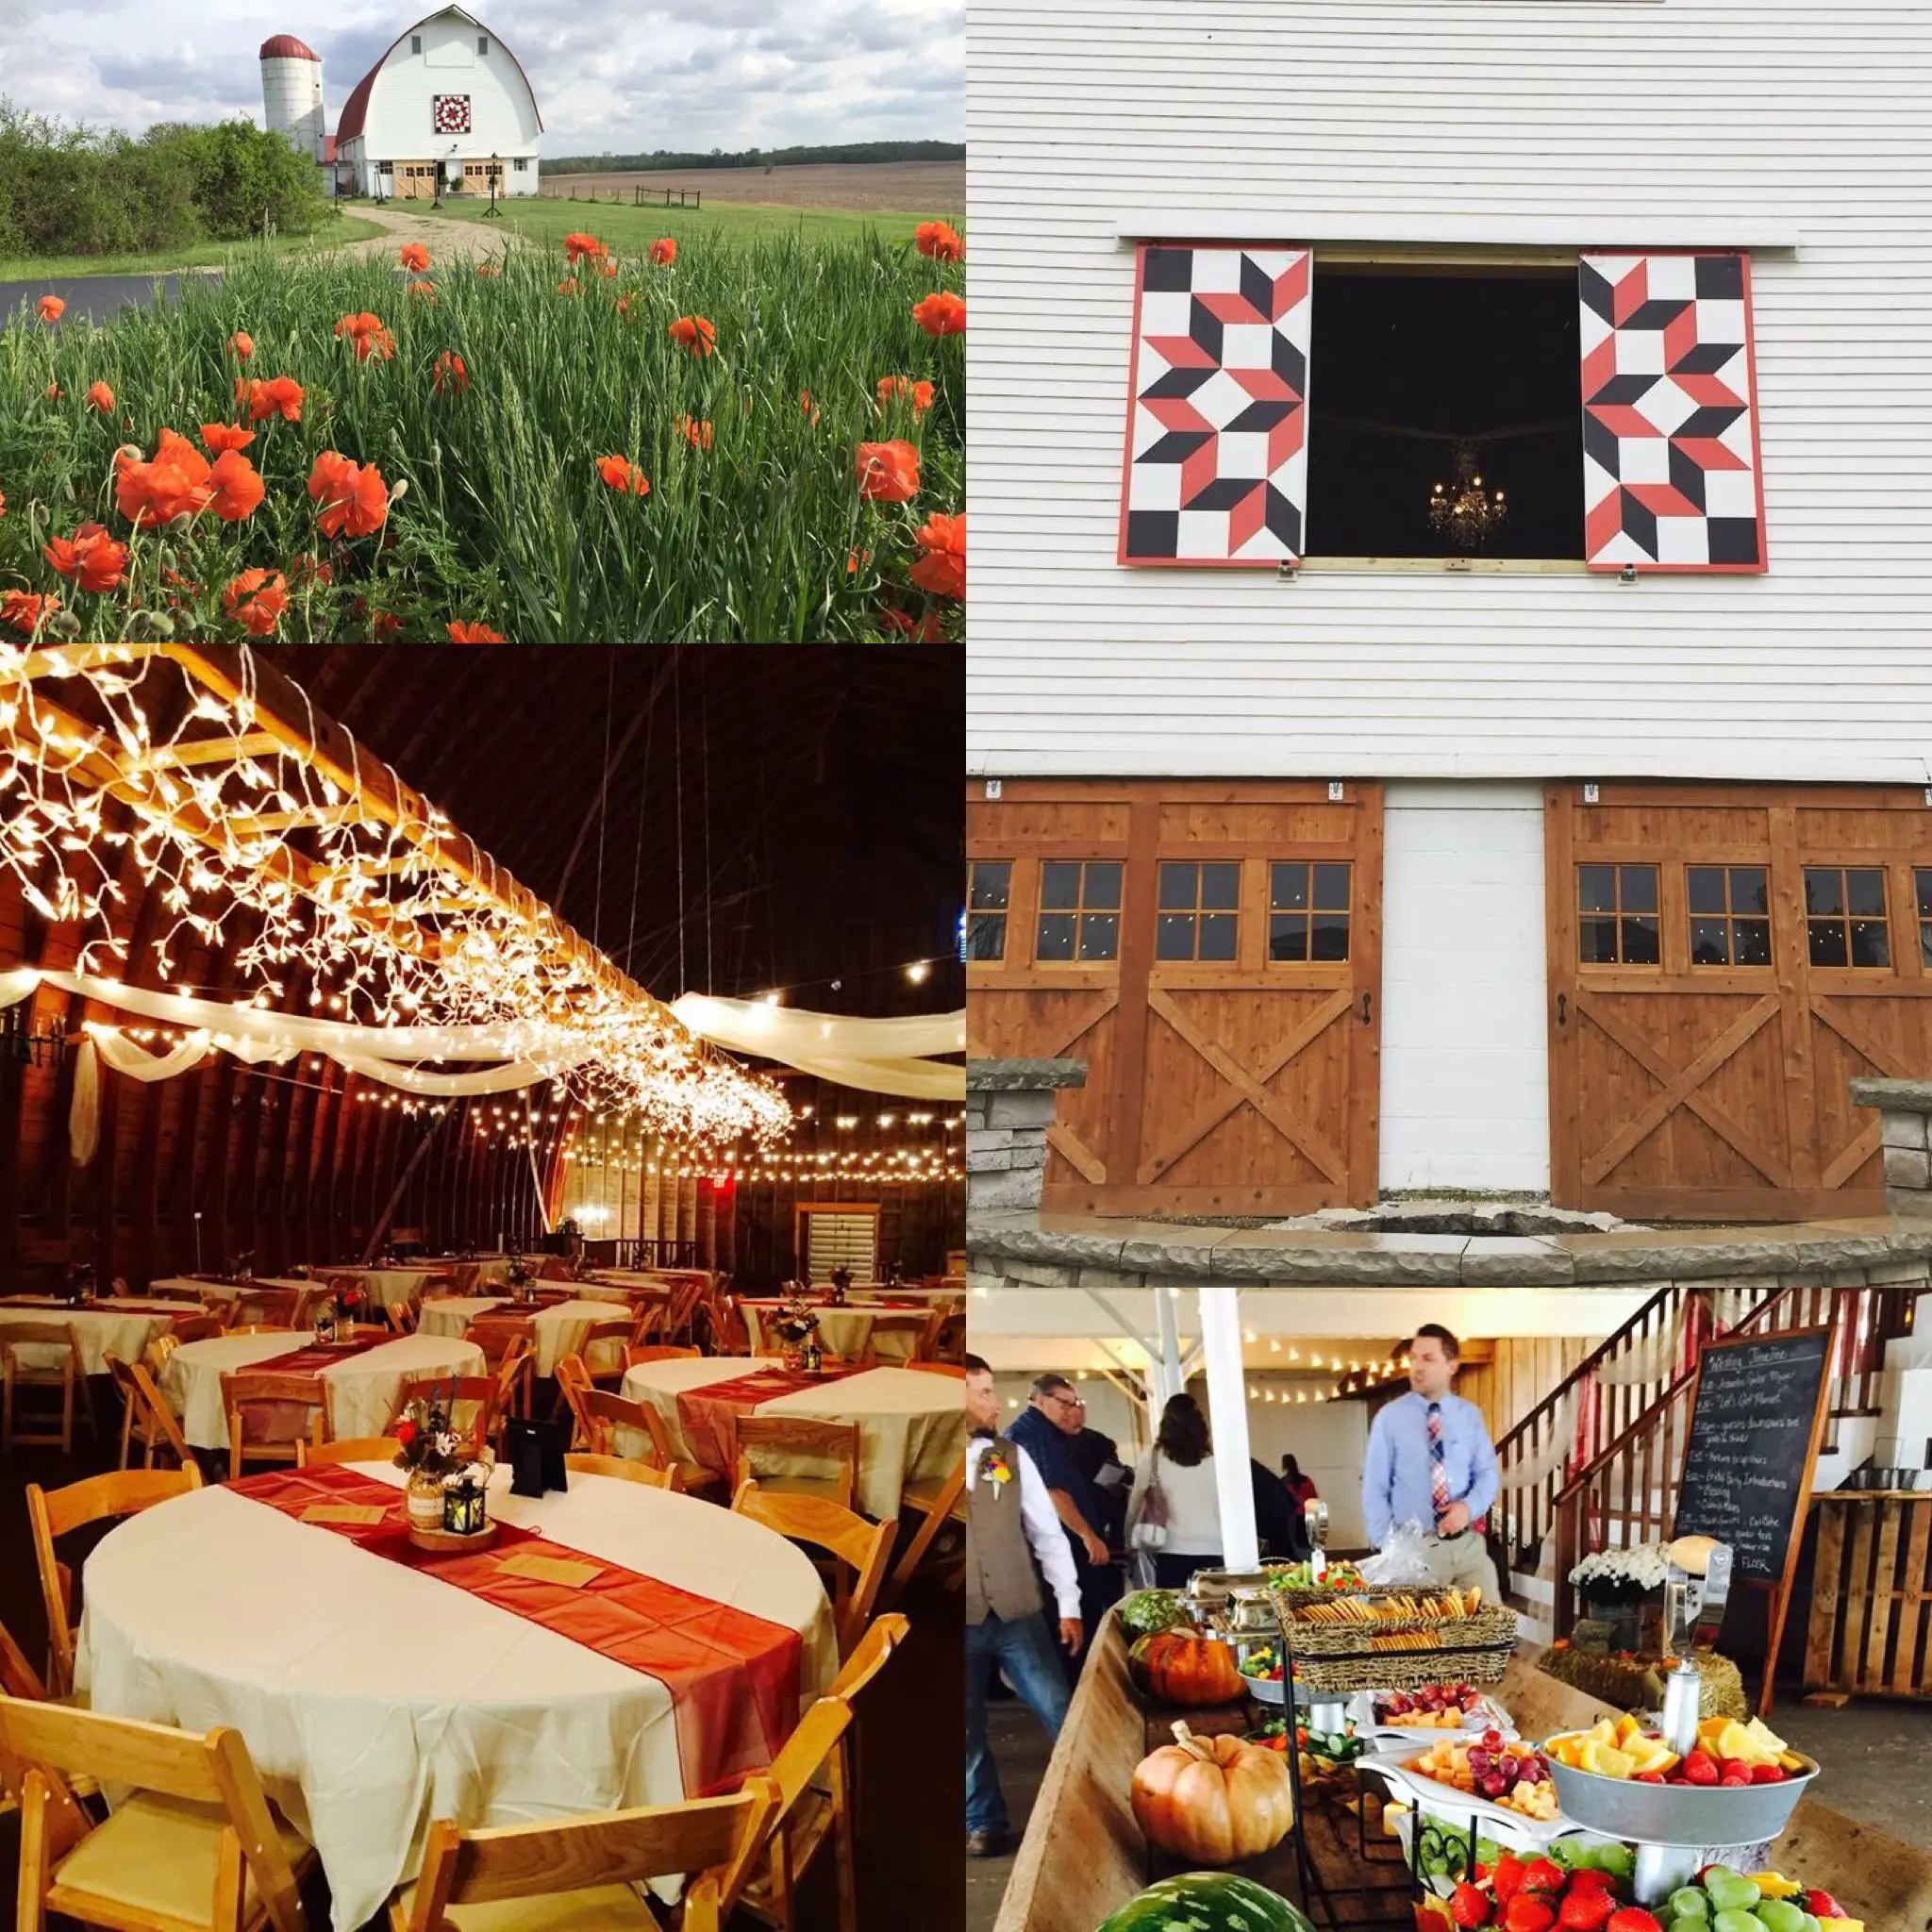 Beautiful quilt barn country venue wedding! Wren Farm in Ohio. wedding ...